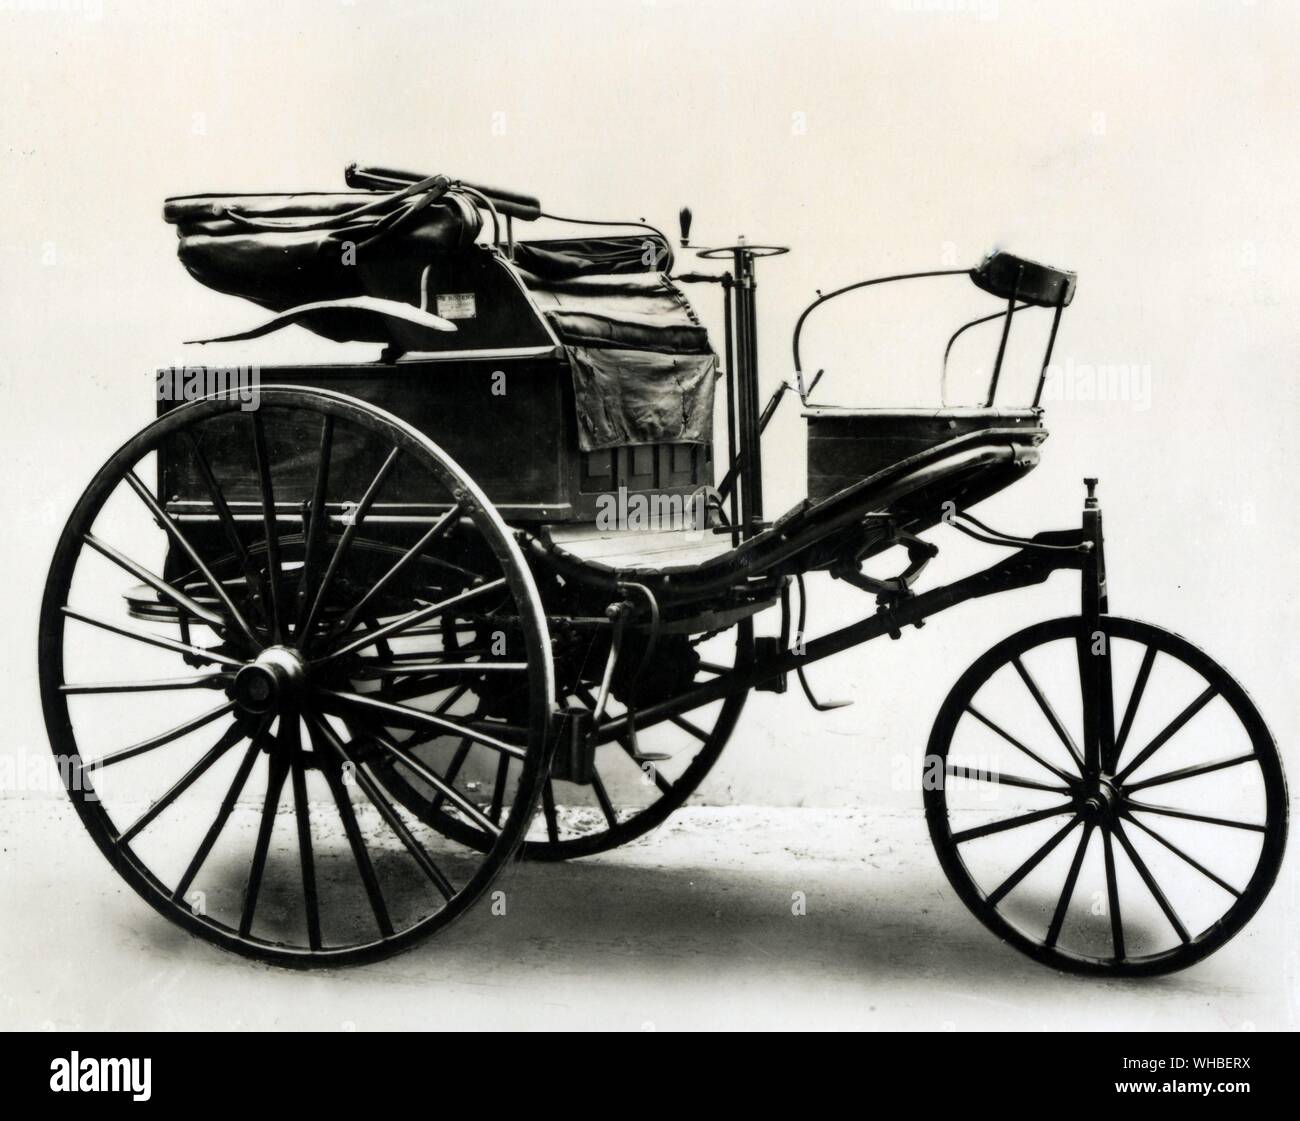 Benz Motor Car 1888 - ein dreirädriges Fahrzeug mit einer horizontalen 1-Zylinder Motor von Carl Benz. Dieses Beispiel ist wahrscheinlich die erste Benziner in England gebracht. Stockfoto